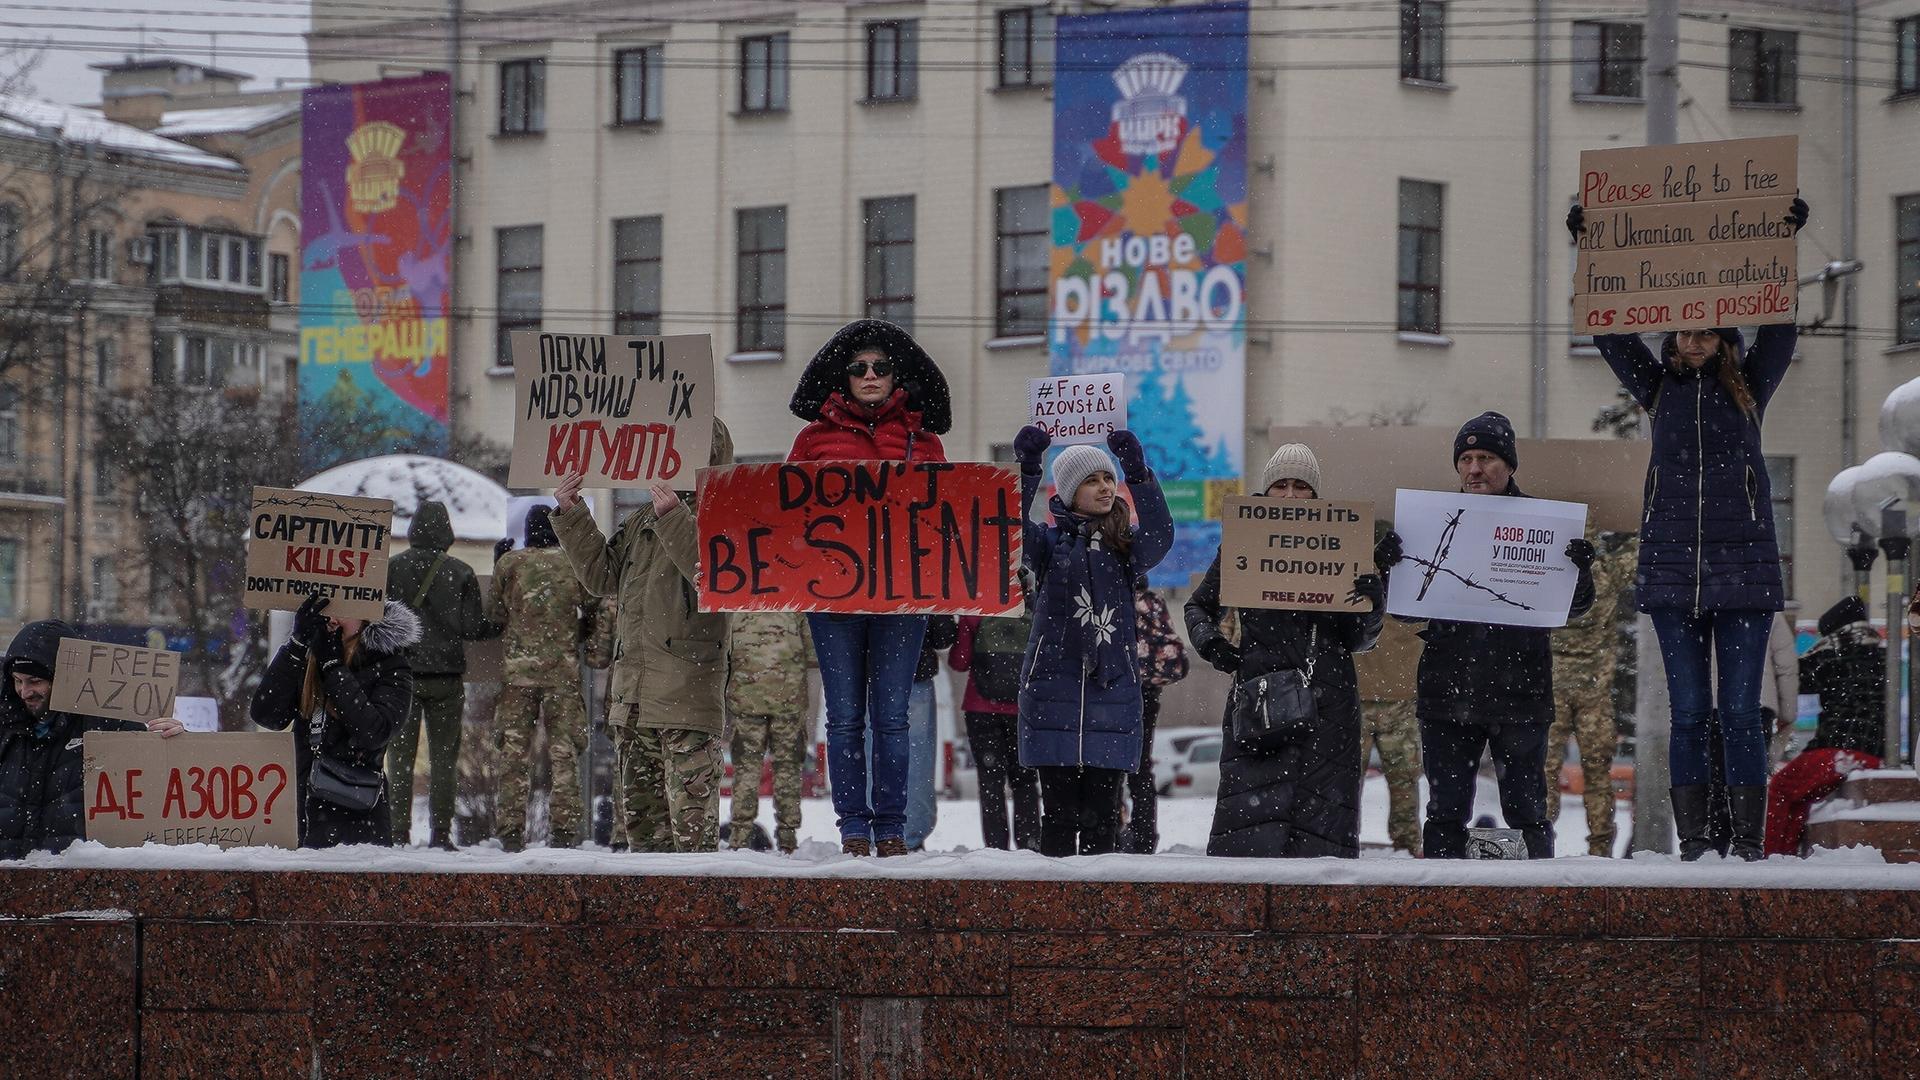 Menschen in Kiew halten Protestschilder in die Höhe, auf eienm steht "Don't be silent"